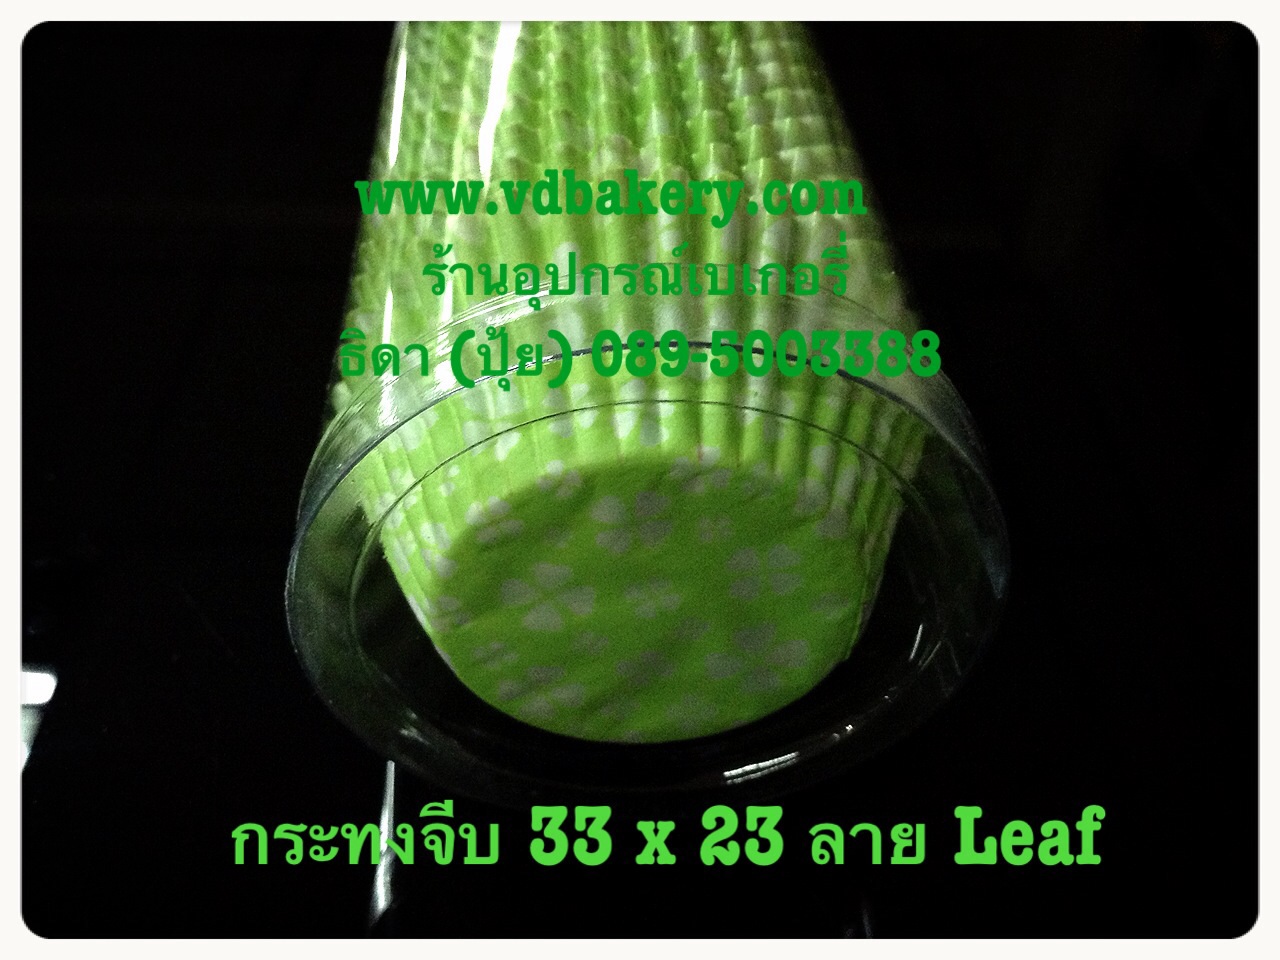 (630703) กระทงจีบ (ไต้หวัน) L 33x23 สีเขียว (600ใบ/แถว)